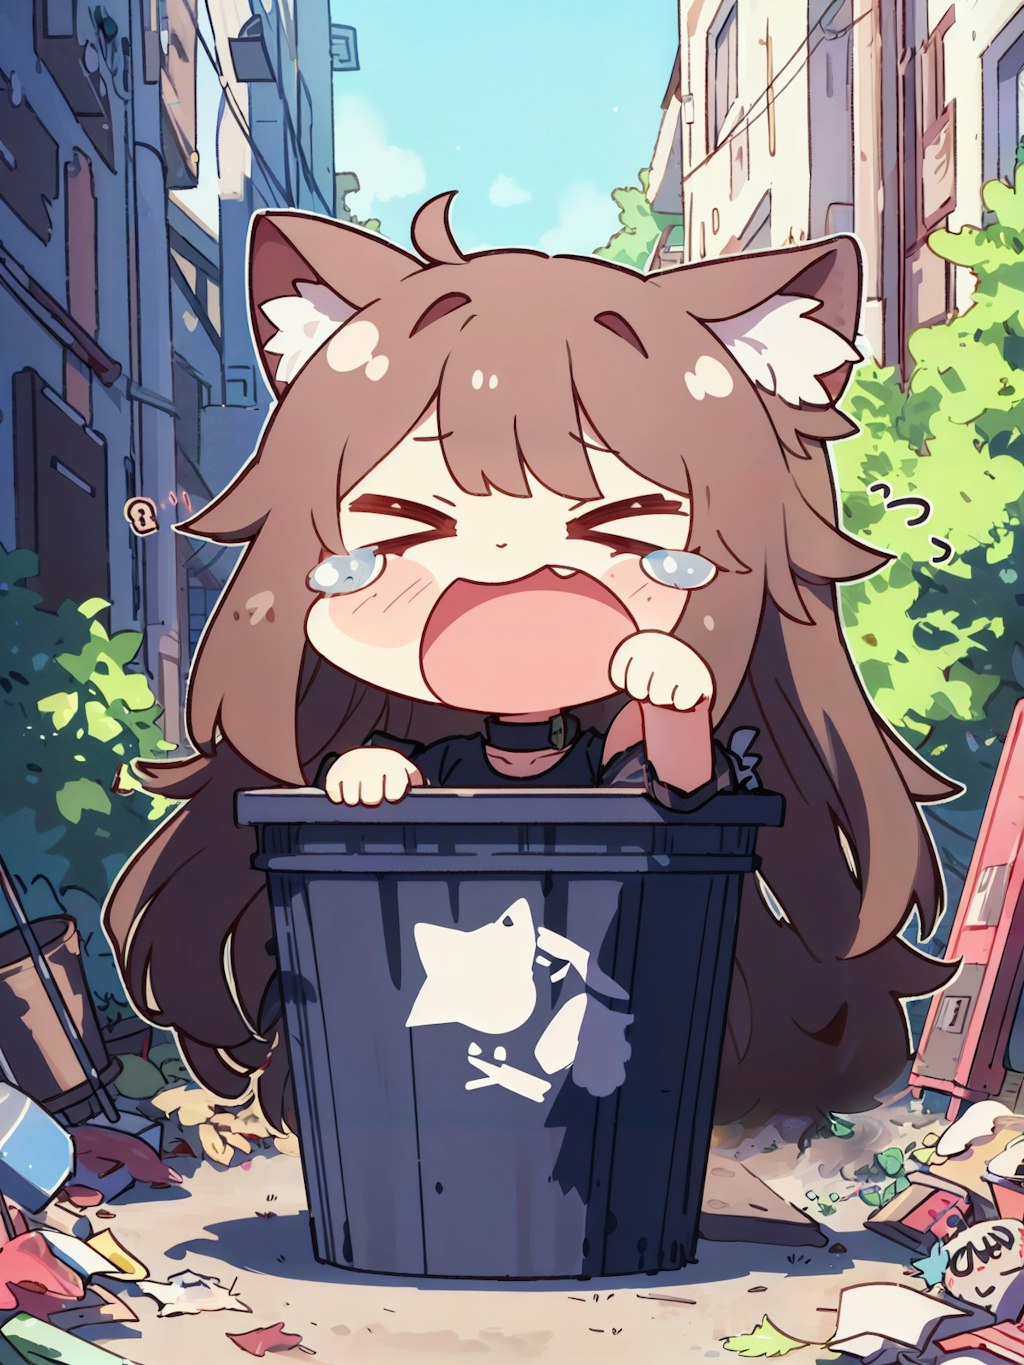 ゴミ捨て場の捨て猫